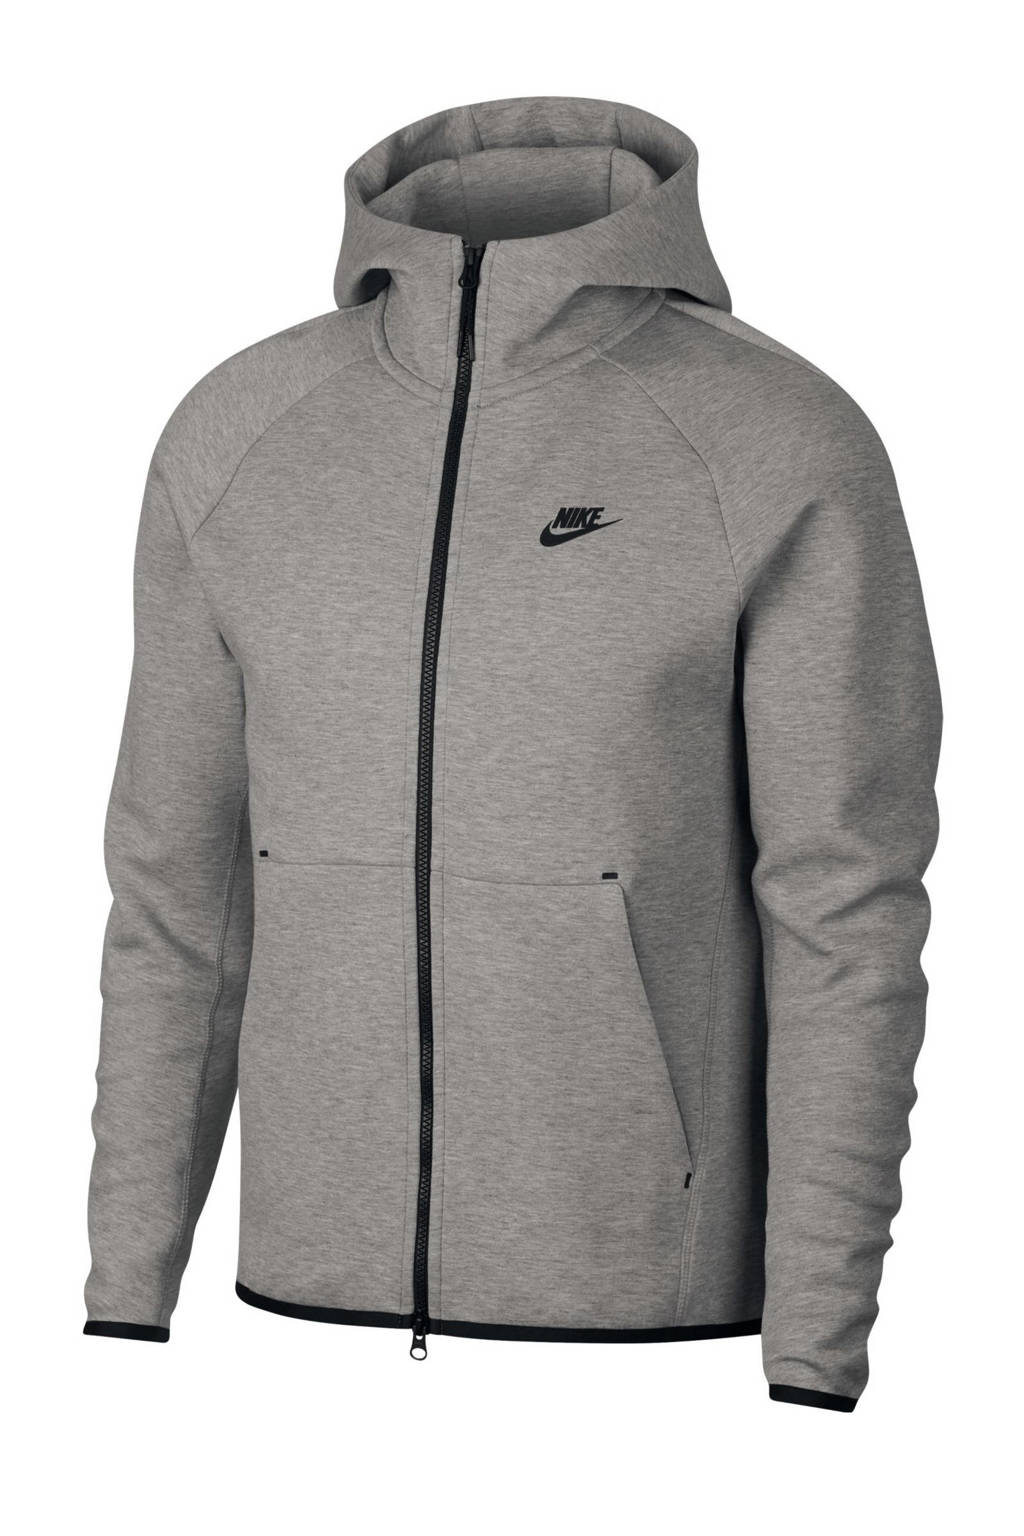 Grijs melange, grijs en zwarte heren Nike Tech Fleece vest van katoen met lange mouwen en capuchon